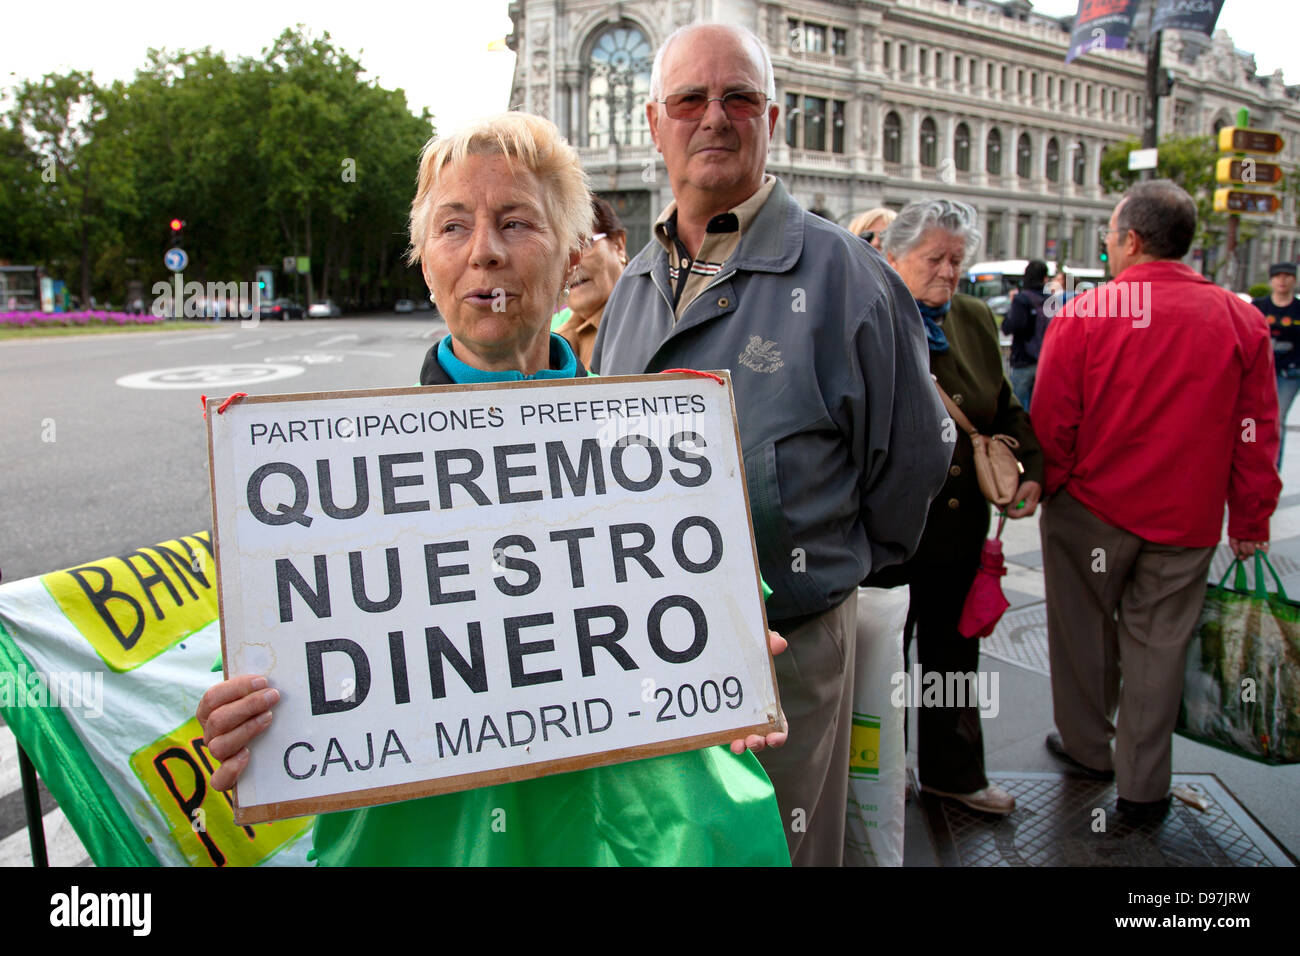 La protesta contro la Caja Madrid, Madrid , Spagna Foto Stock